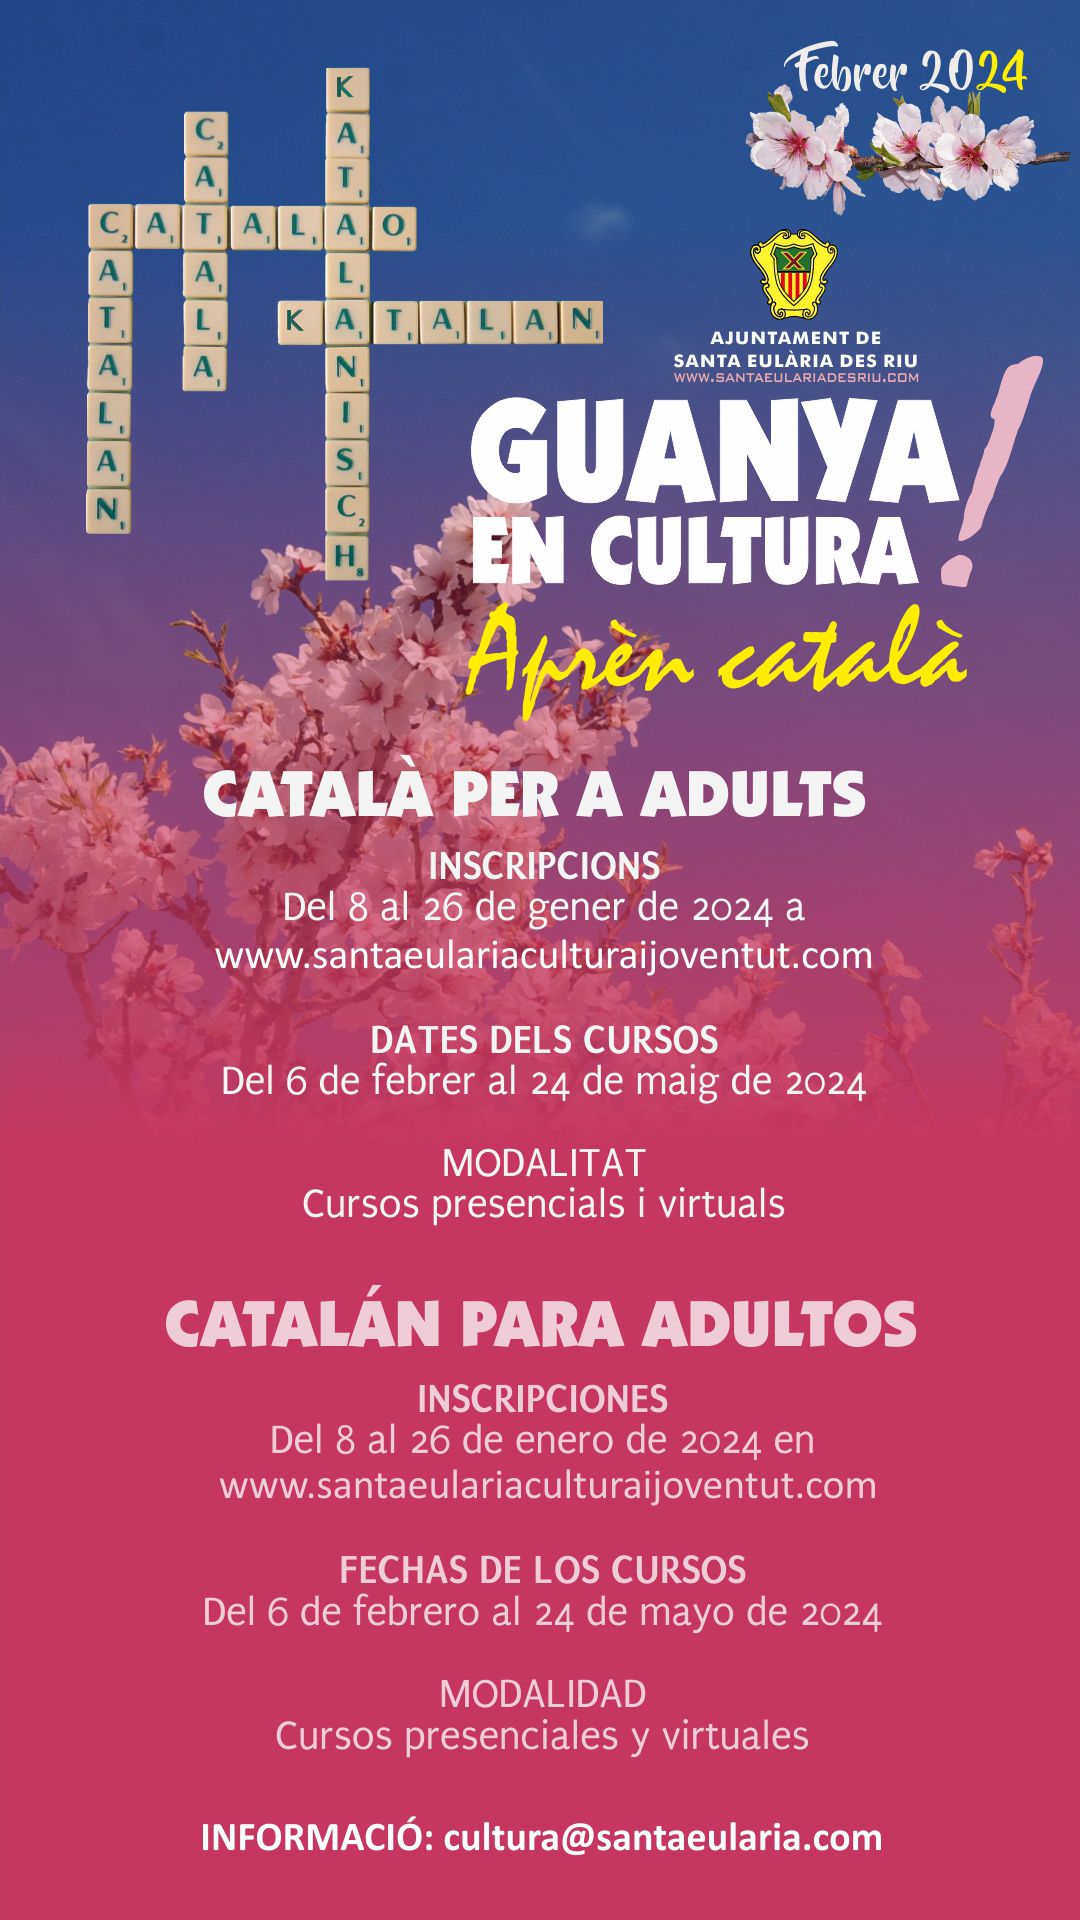 Abierta hasta el 26 de enero la matrícula para los cursos de catalán que tendrán lugar entre febrero y mayo